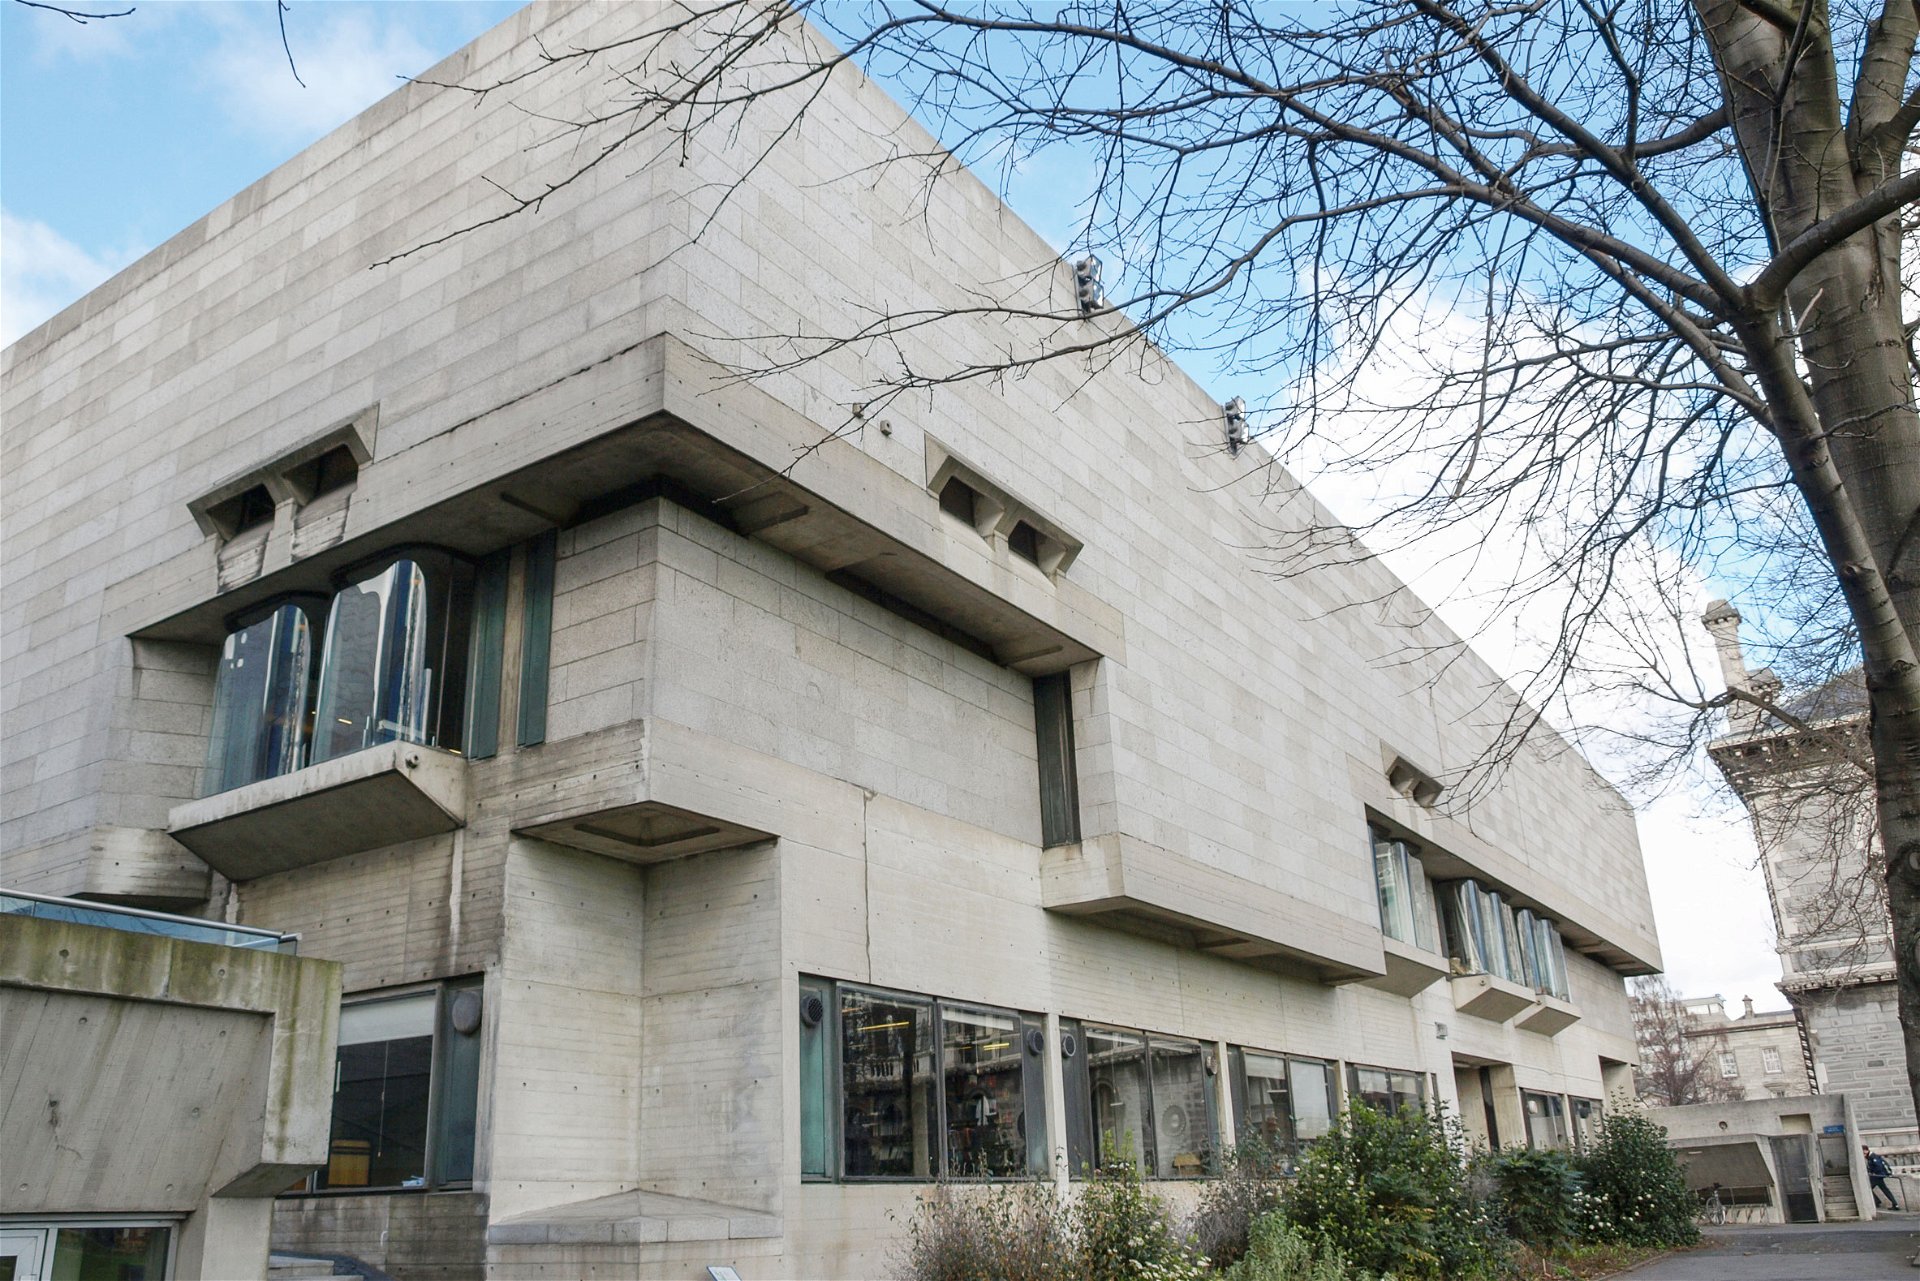 Berkeley Library: Ahrends, Burton & Koralek (ABK), 1967, »Der erste Bau von ABK und das beste moderne Gebäude in Dublin. Skulptural sitzt es in perfekter Harmonie zwischen seinen historischen Nachbarn, dem Museum Building und der Long Room Library.«